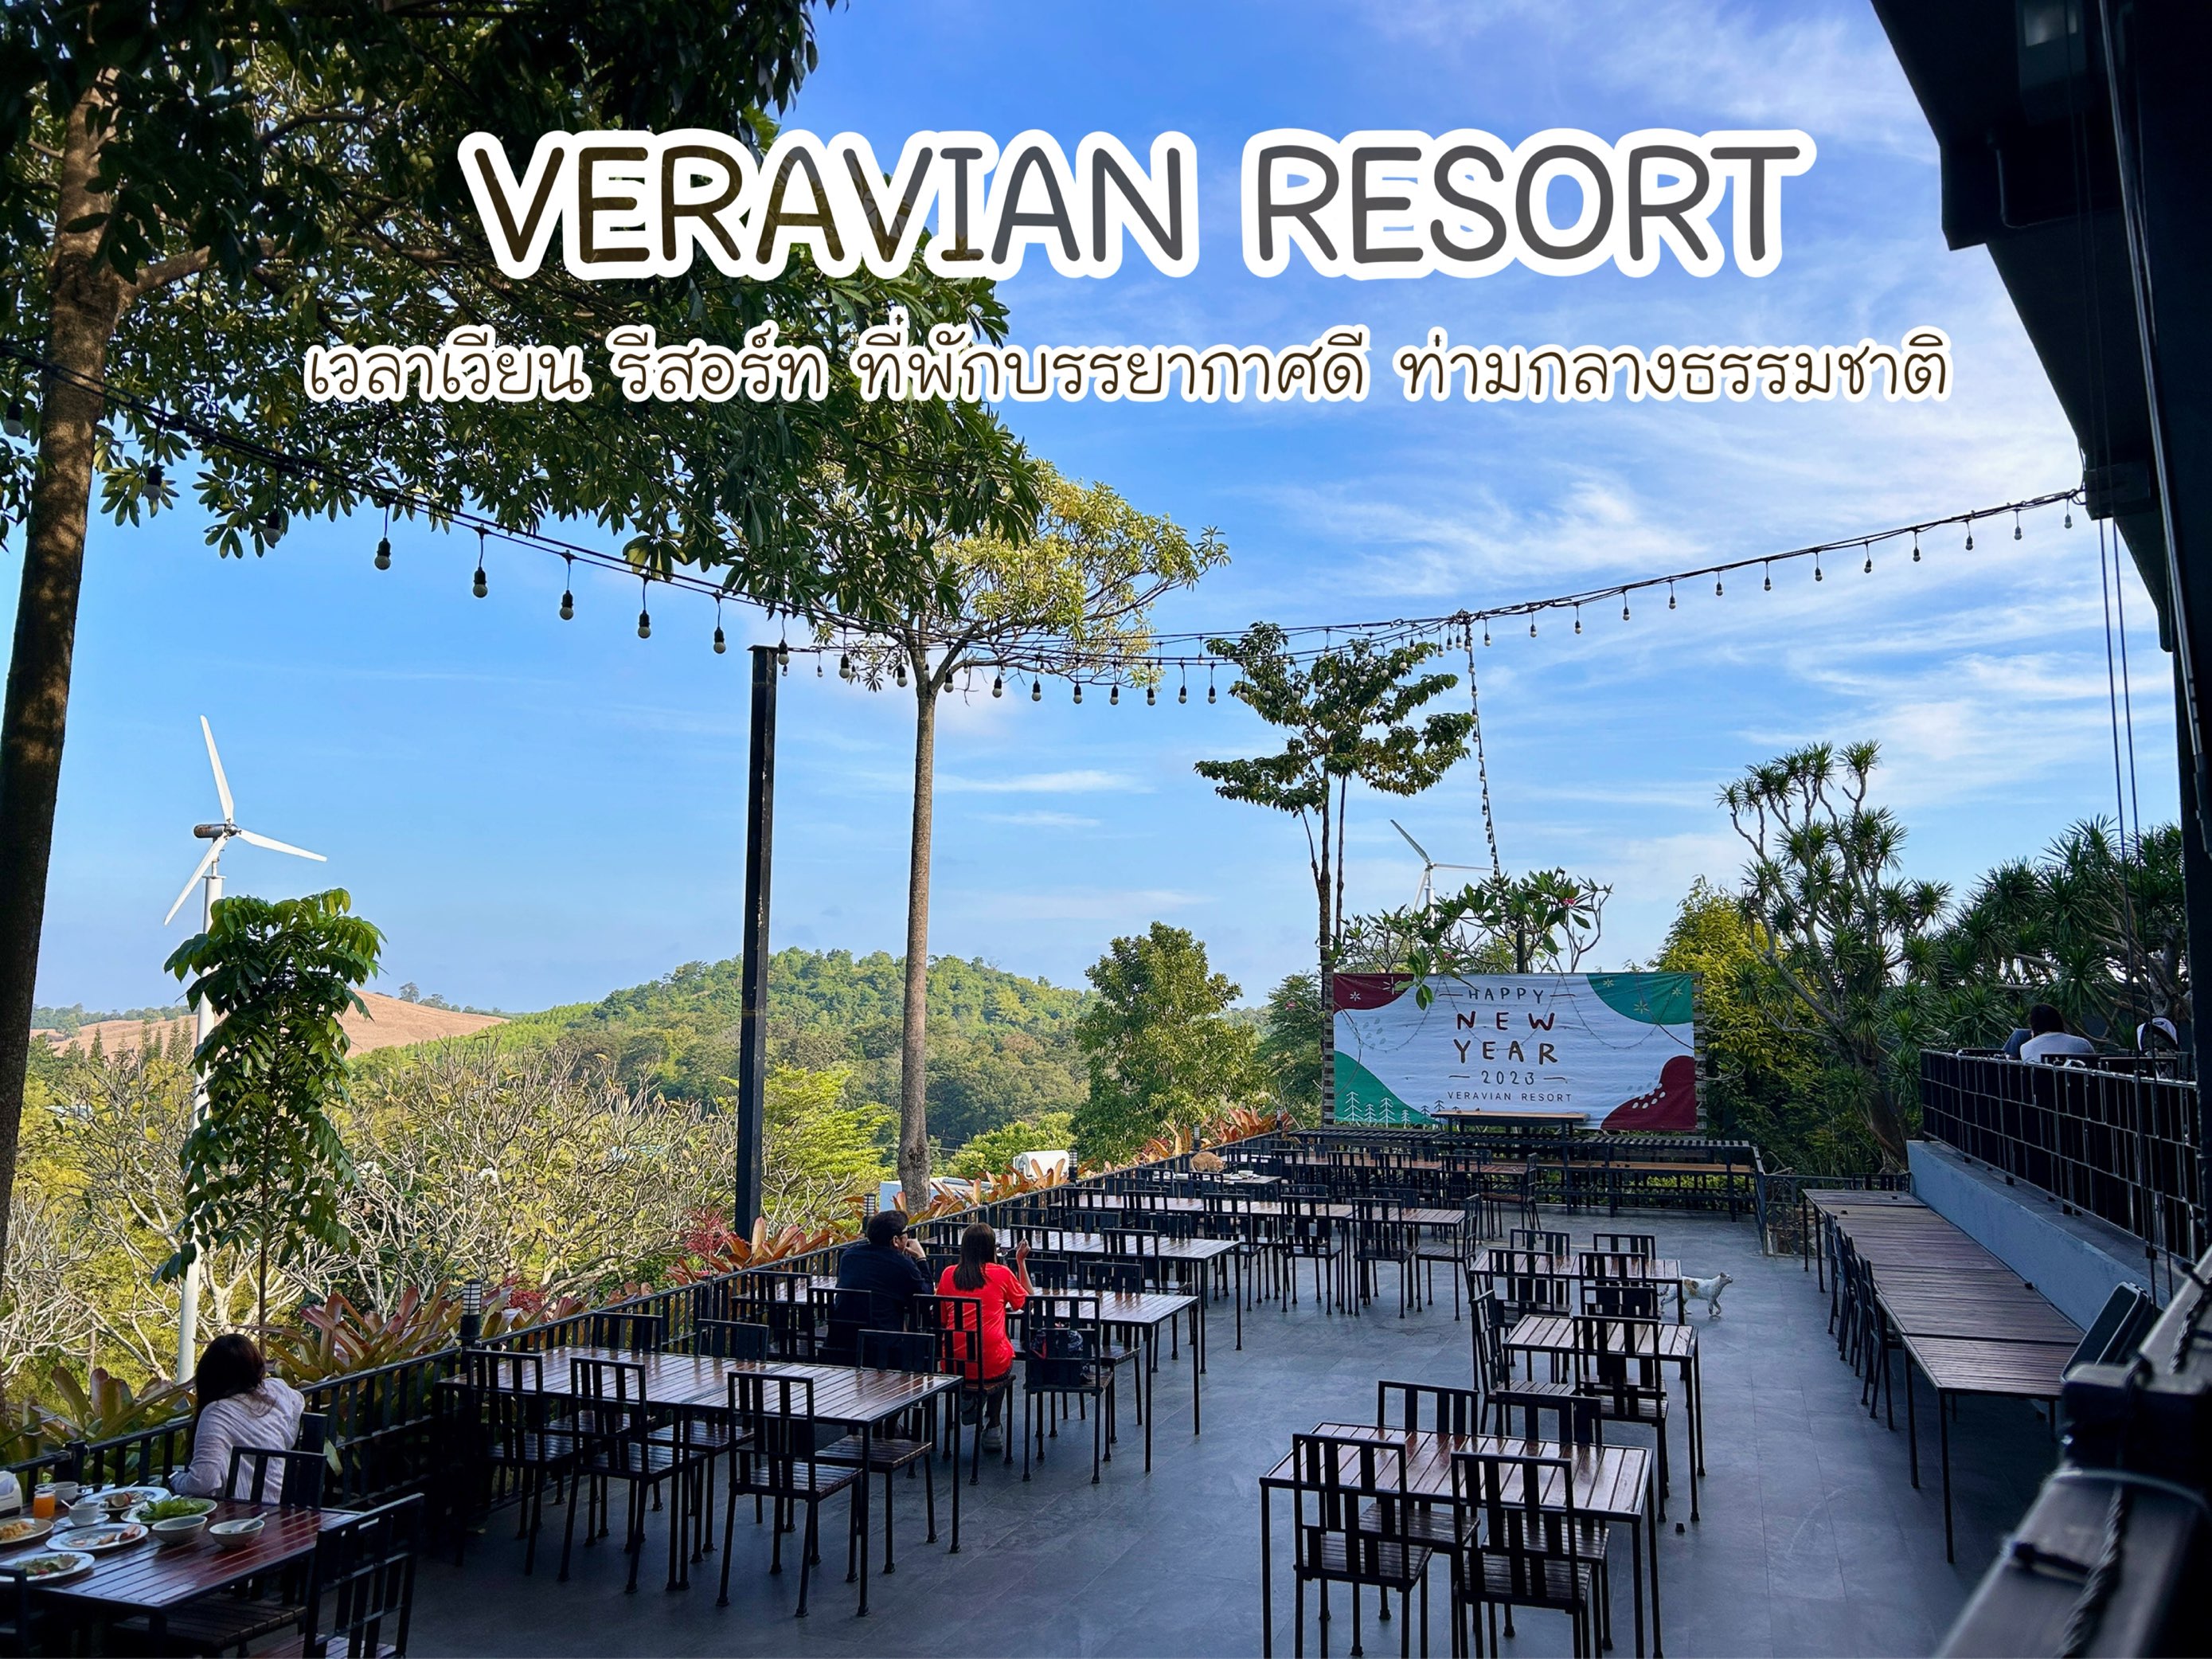 让我们去Wang Nam Khiao Time Vian Resort 享受寒风。